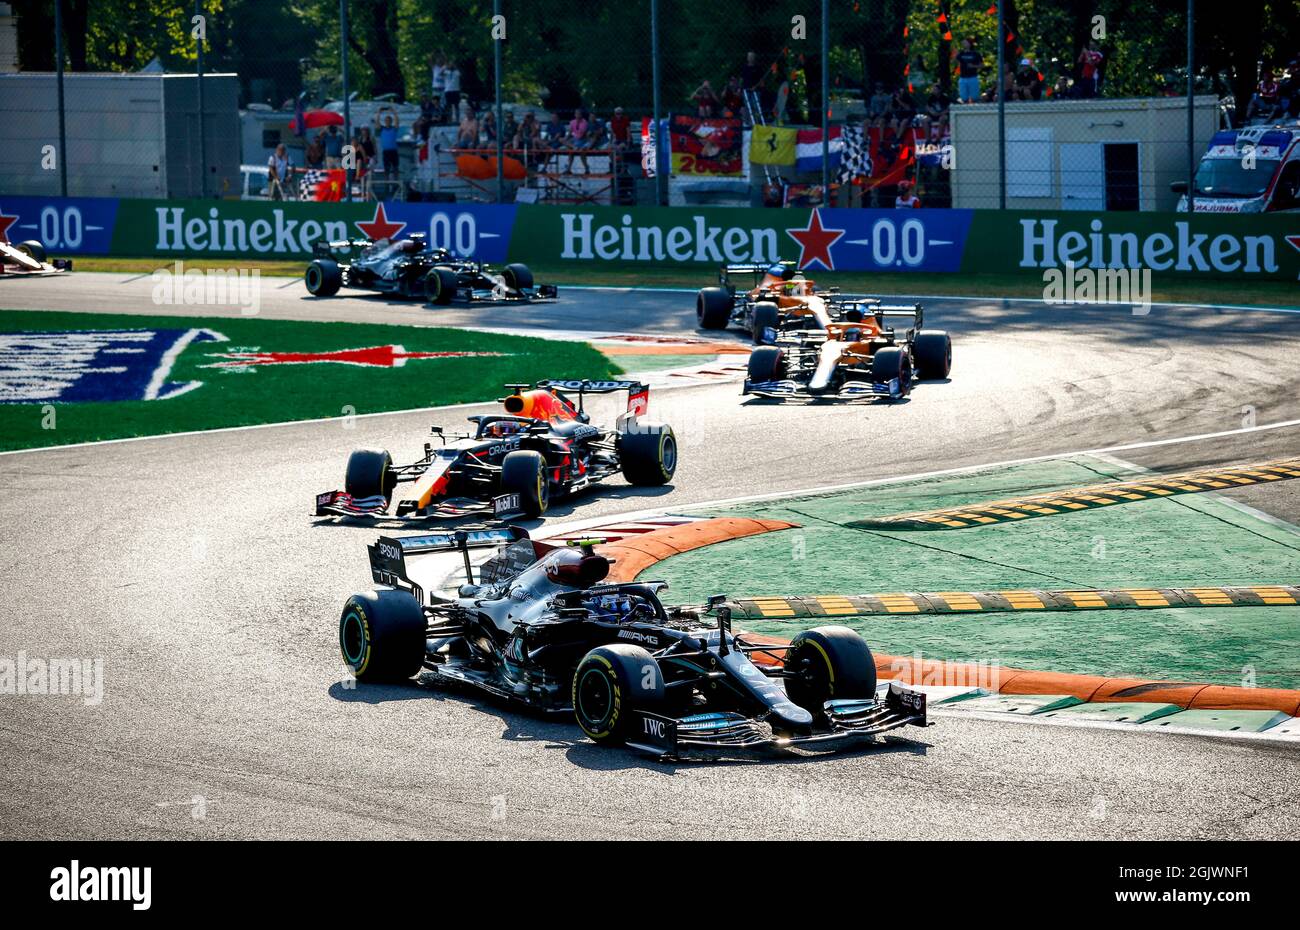 #77 Valtteri Bottas (fin, Mercedes AMG Petronas F1 Team), #33 Max Verstappen (NED, Red Bull Racing), Gran Premio di F1 d'Italia all'Autodromo Nazionale di Monza il 11 settembre 2021 a Monza, Italia. (Foto di HOCH ZWei) Foto Stock